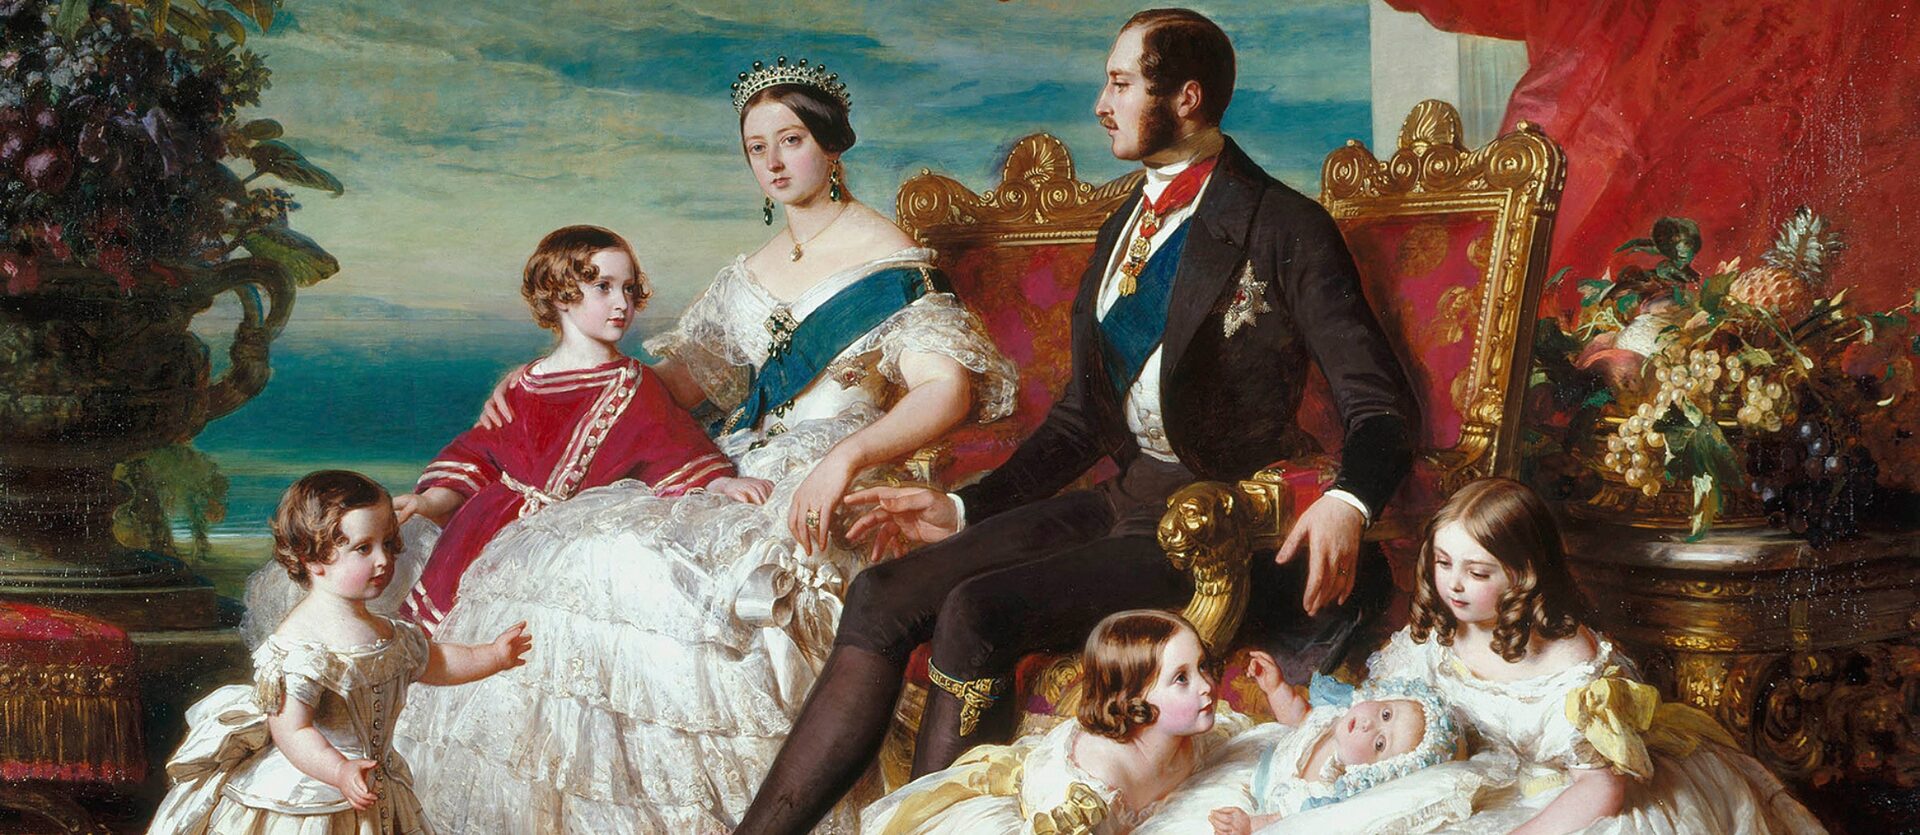 The Life Of Queen Victoria And Prince Albert 200 Jahre Königin Victoria Und Prinz Albert 